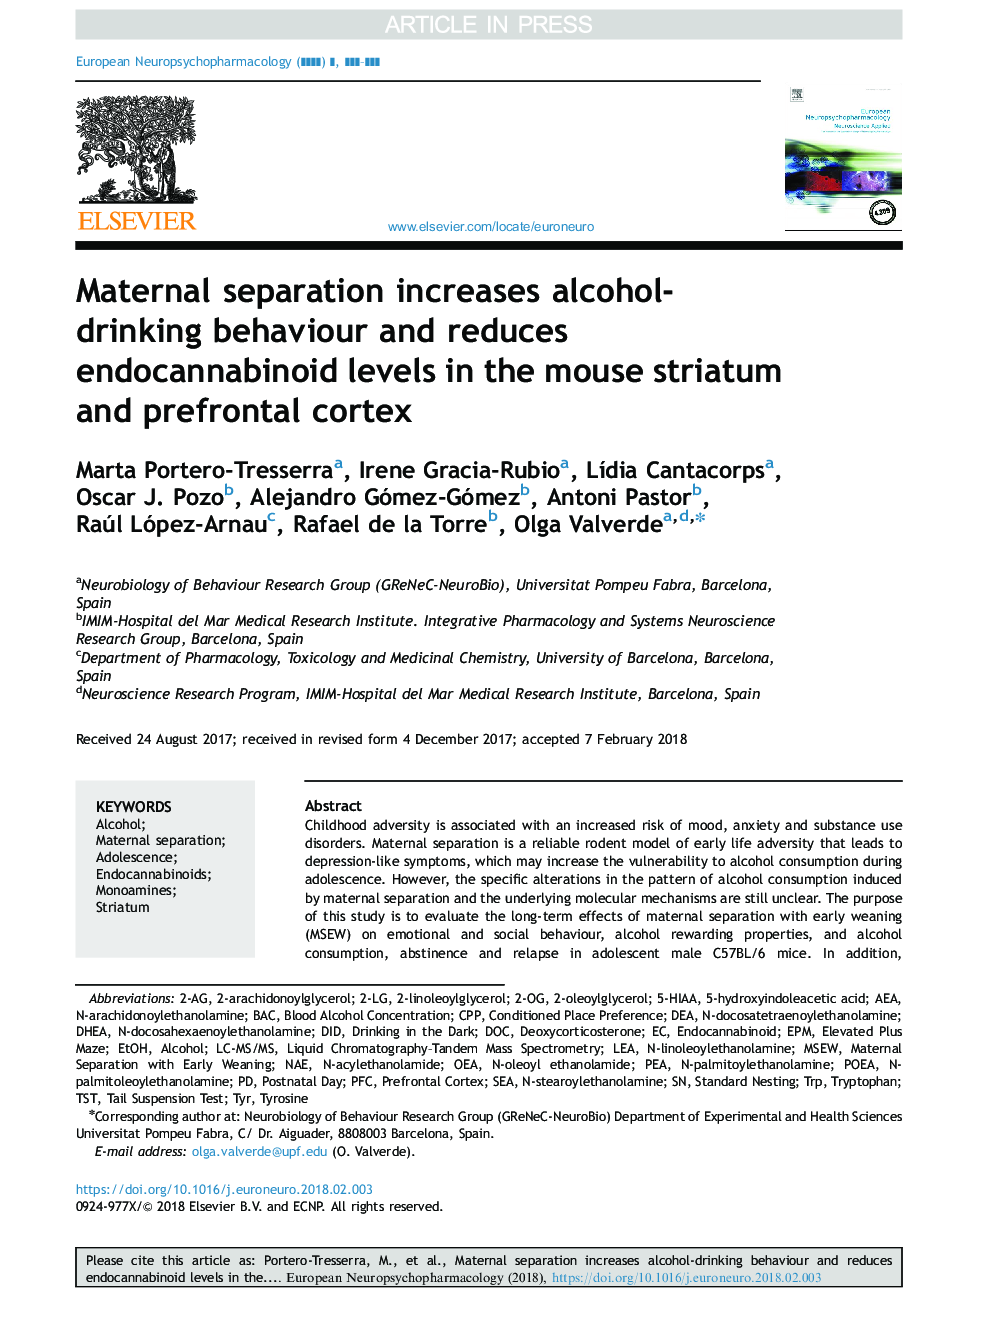 جداسازی مادری باعث افزایش رفتار الکل می شود و سطوح اندو کانابینوئید در موش صحرایی موش و قشر پیش فونتیال را کاهش می دهد 